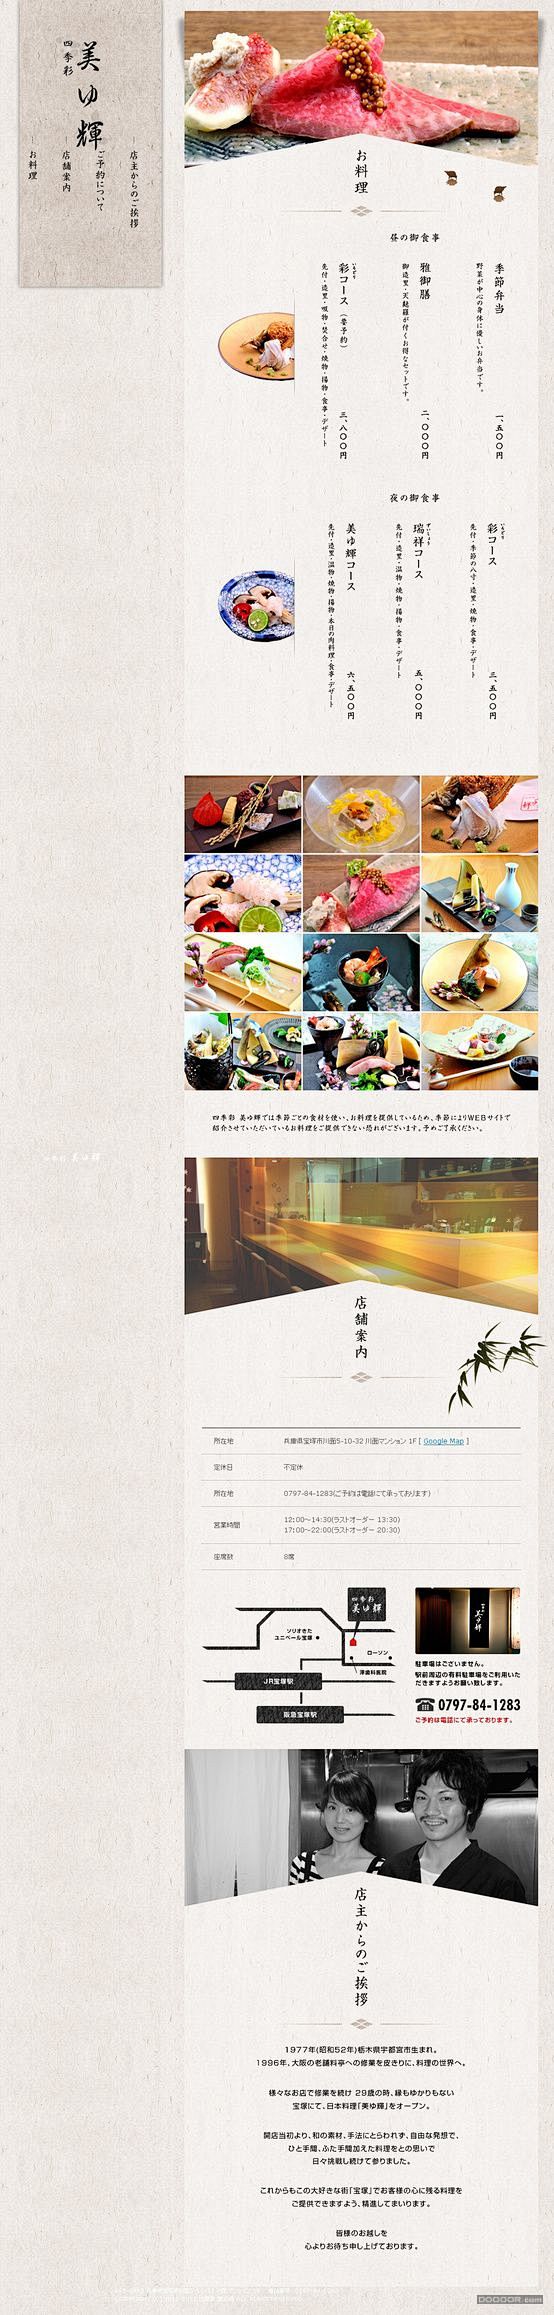 四季彩-日本美辉料理美食餐饮网站设计.j...